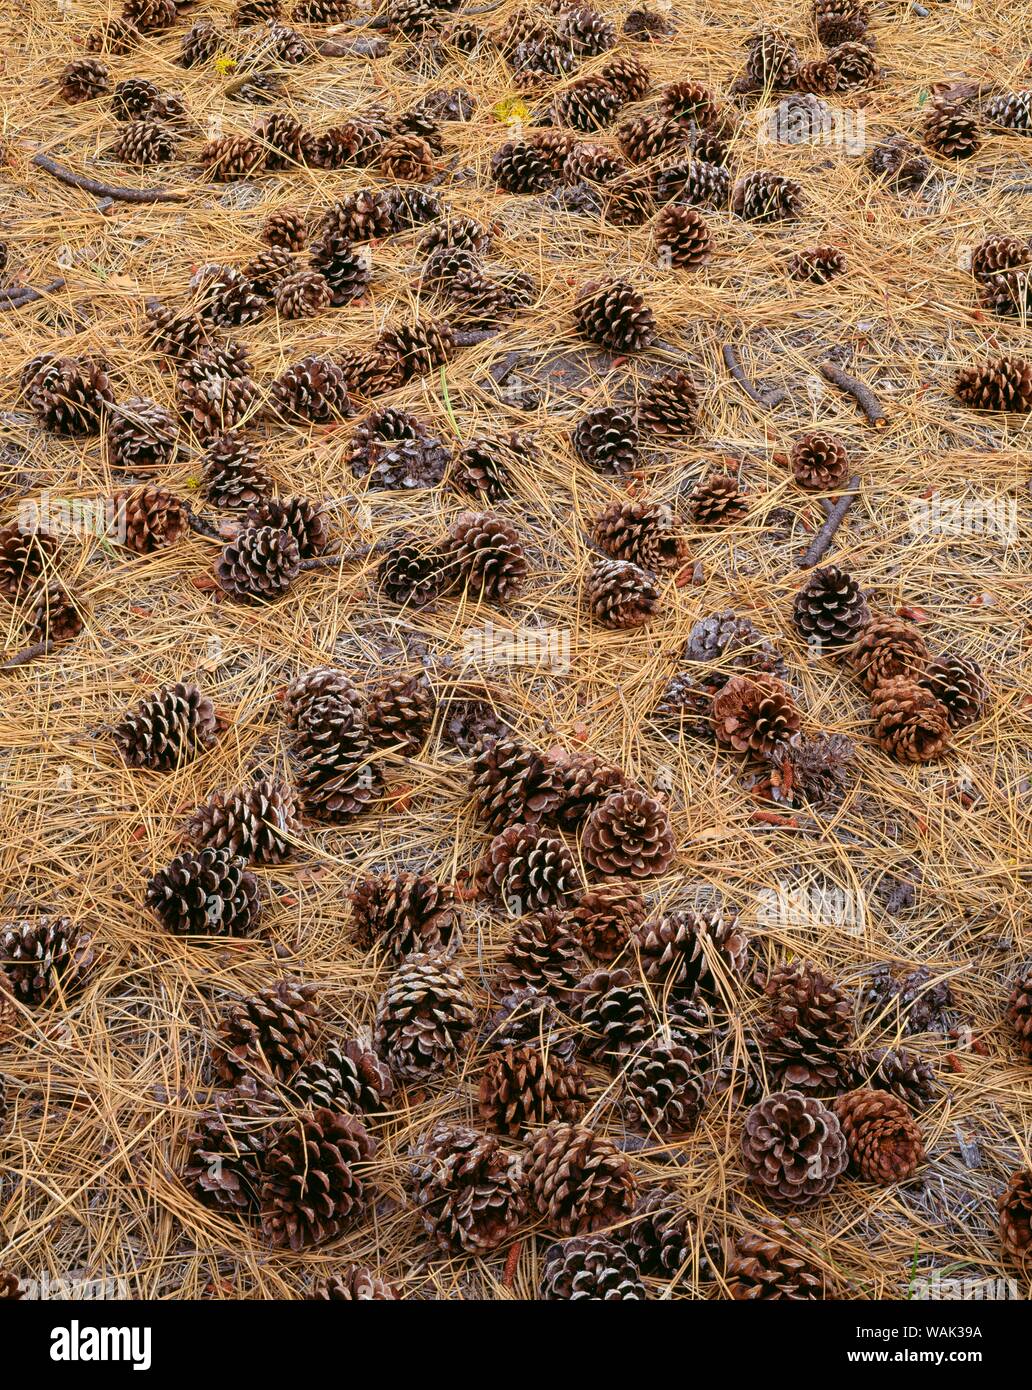 Stati Uniti d'America, Oregon, Newberry nazionale monumento di origine vulcanica. I coni e gli aghi di pino Ponderosa coprire il suolo della foresta. Foto Stock